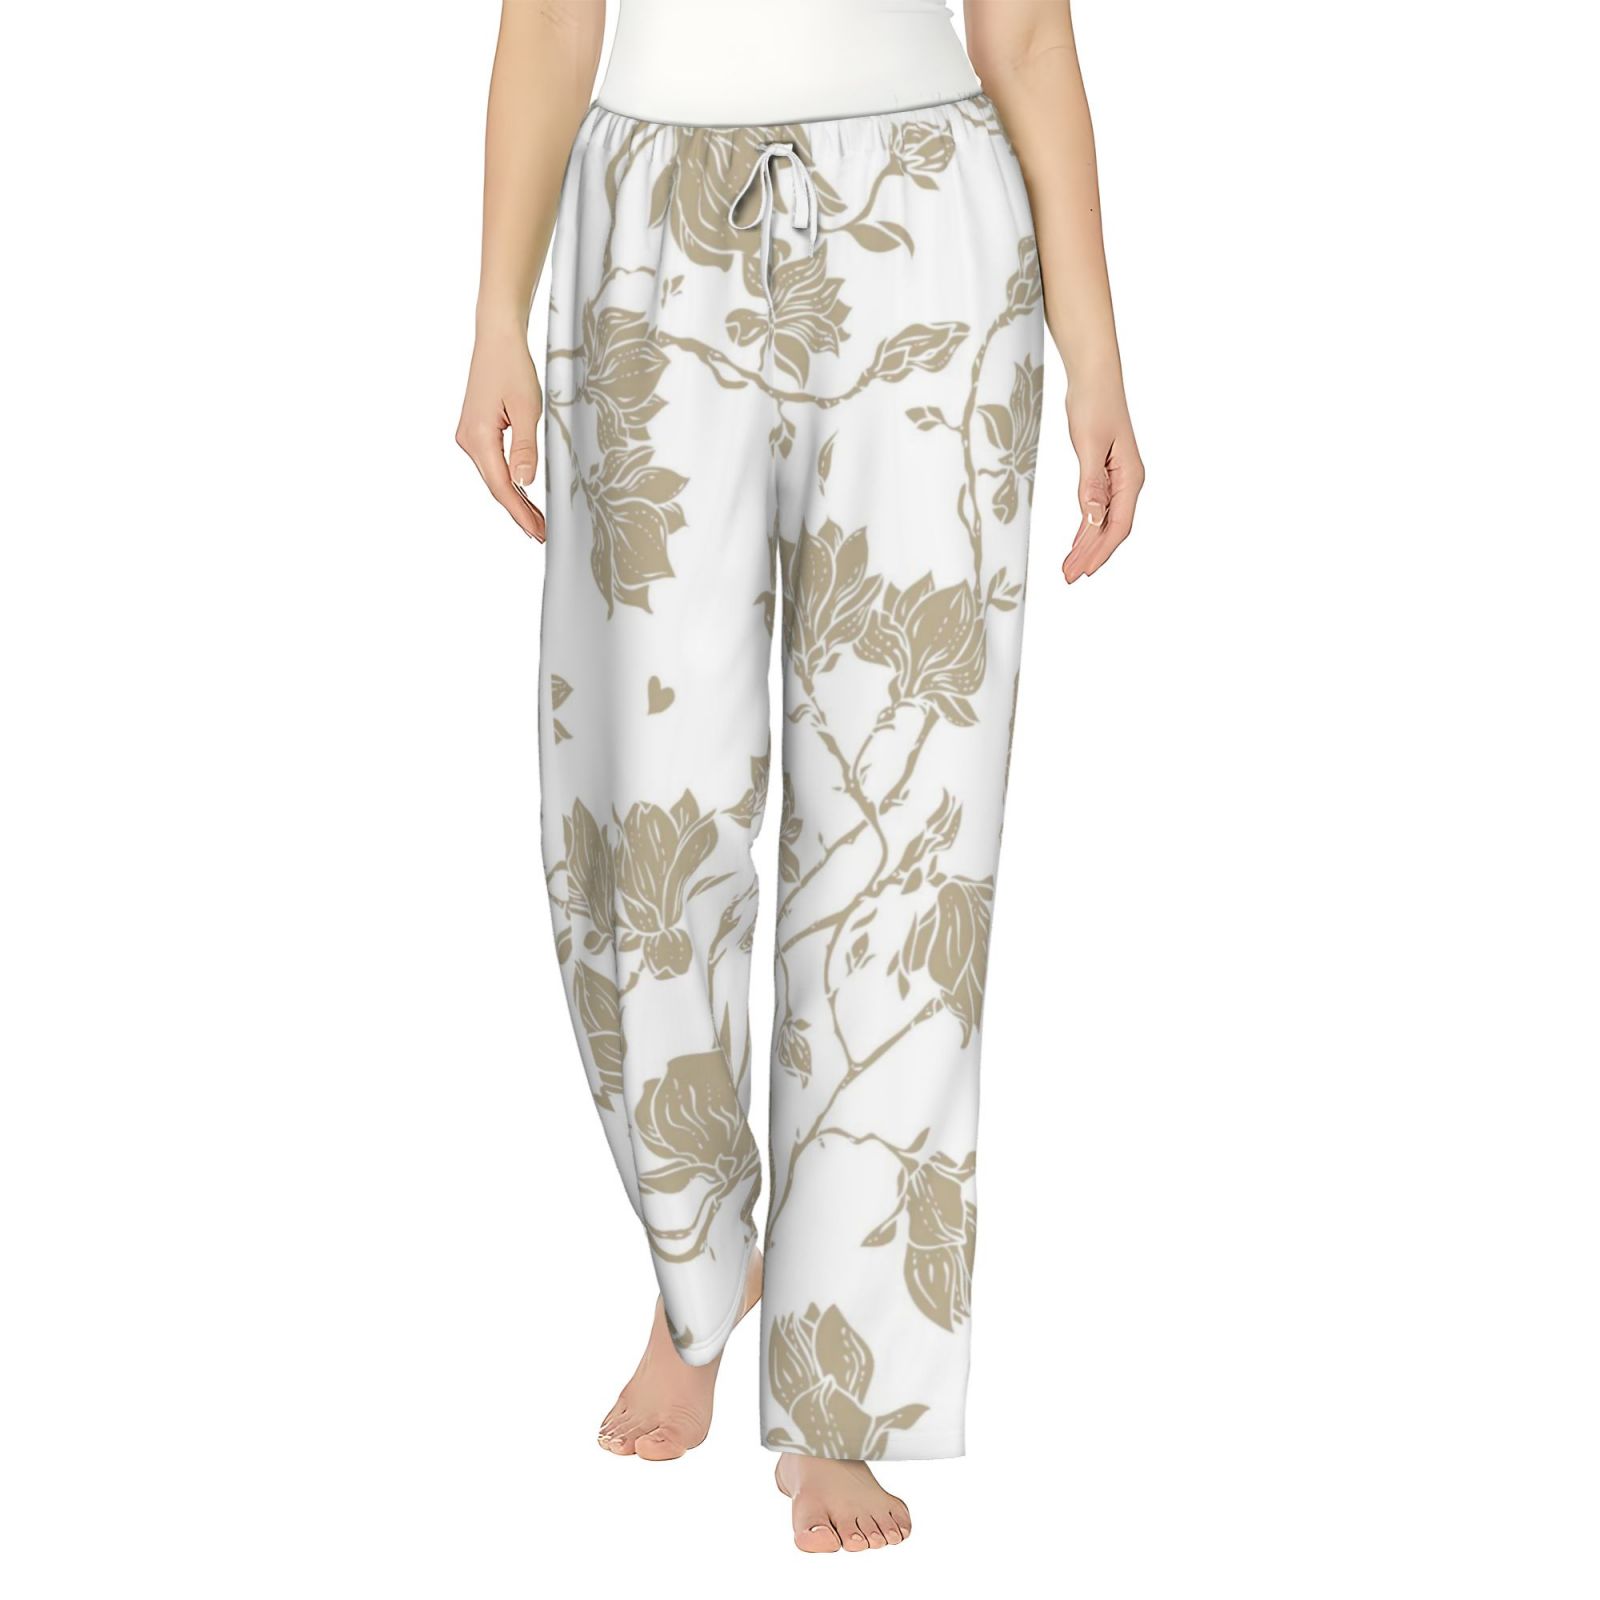 Fotbe Vintage Stylized White Color Women's Pajama Pants,Sleepwear Pants ...